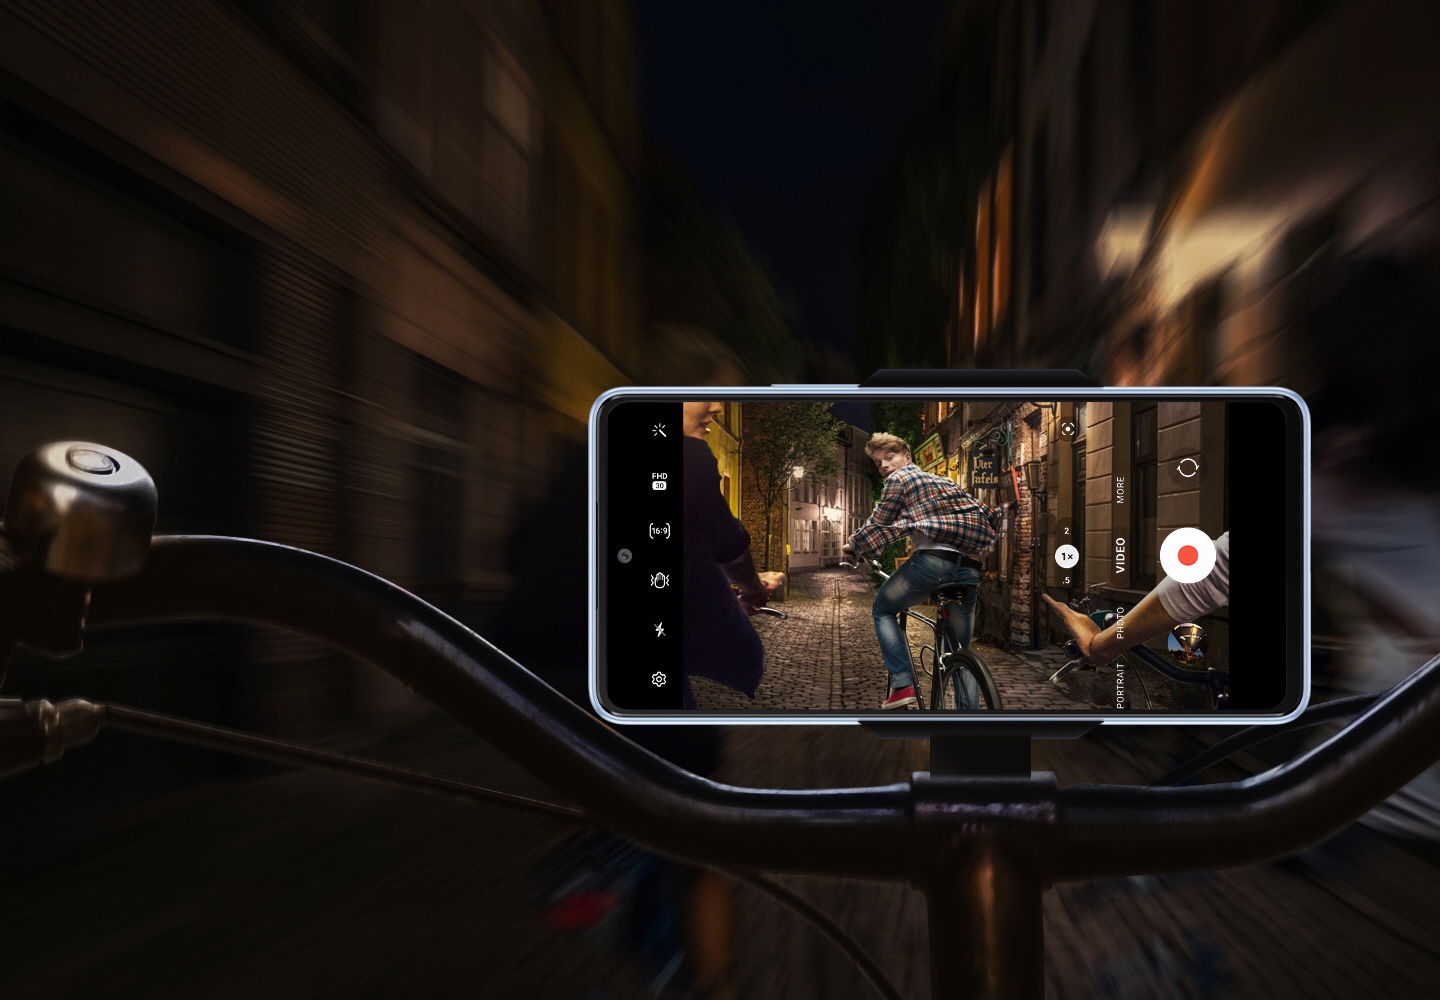 Vista frontale di un Galaxy A53 5G montato orizzontalmente sul manubrio di una bicicletta. Mentre lo sfondo è sfocato e scuro, lo schermo dello smartphone mostra che sta registrando in modo chiaro e stabile ciò che accade: un gruppo di ciclisti sta percorrendo una strada poco illuminata di notte, con il ciclista più avanti che guarda il telefono. 